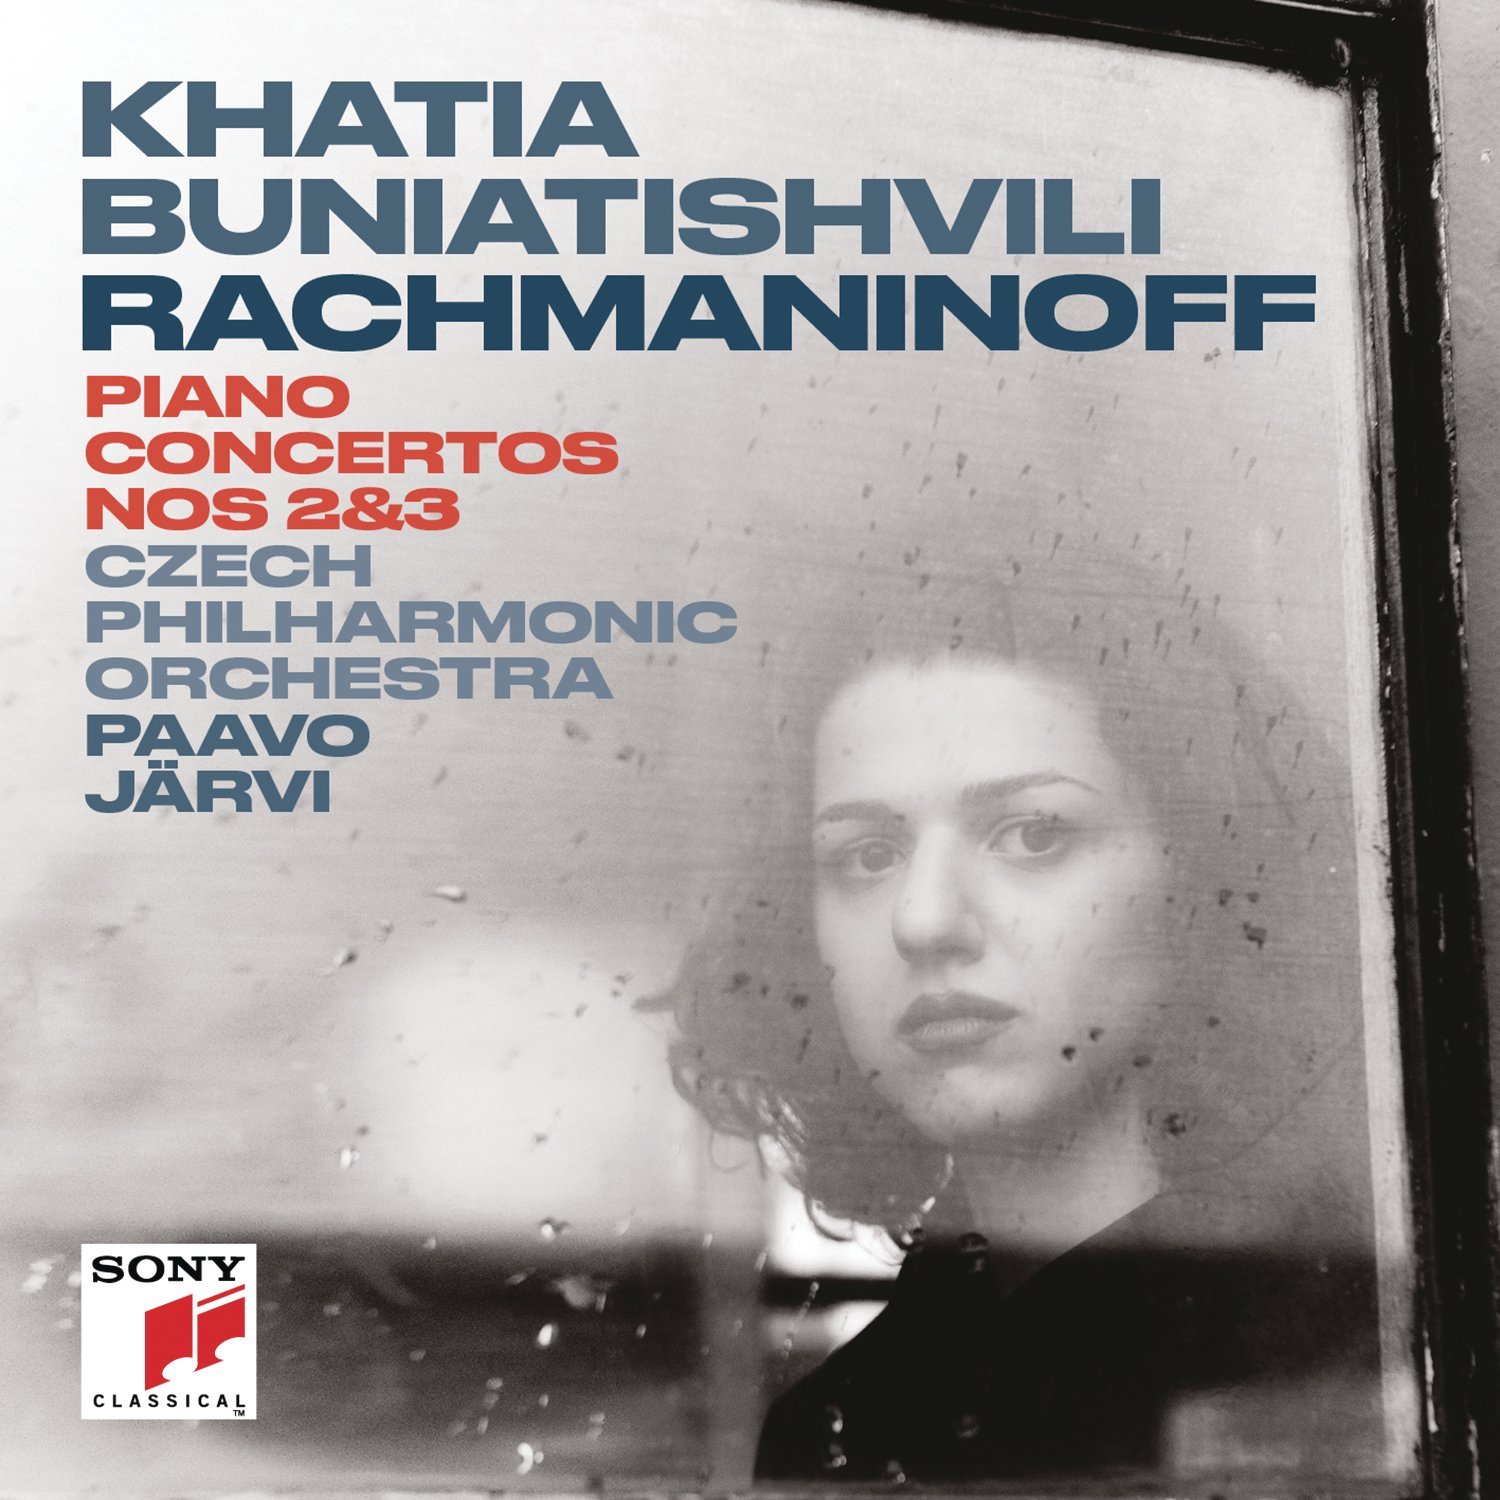 Khatia Buniatishvili - Rachmaninoff: Piano Concerto No. 2 & No. 3 (2017) [Qobuz FLAC 24bit/96kHz]